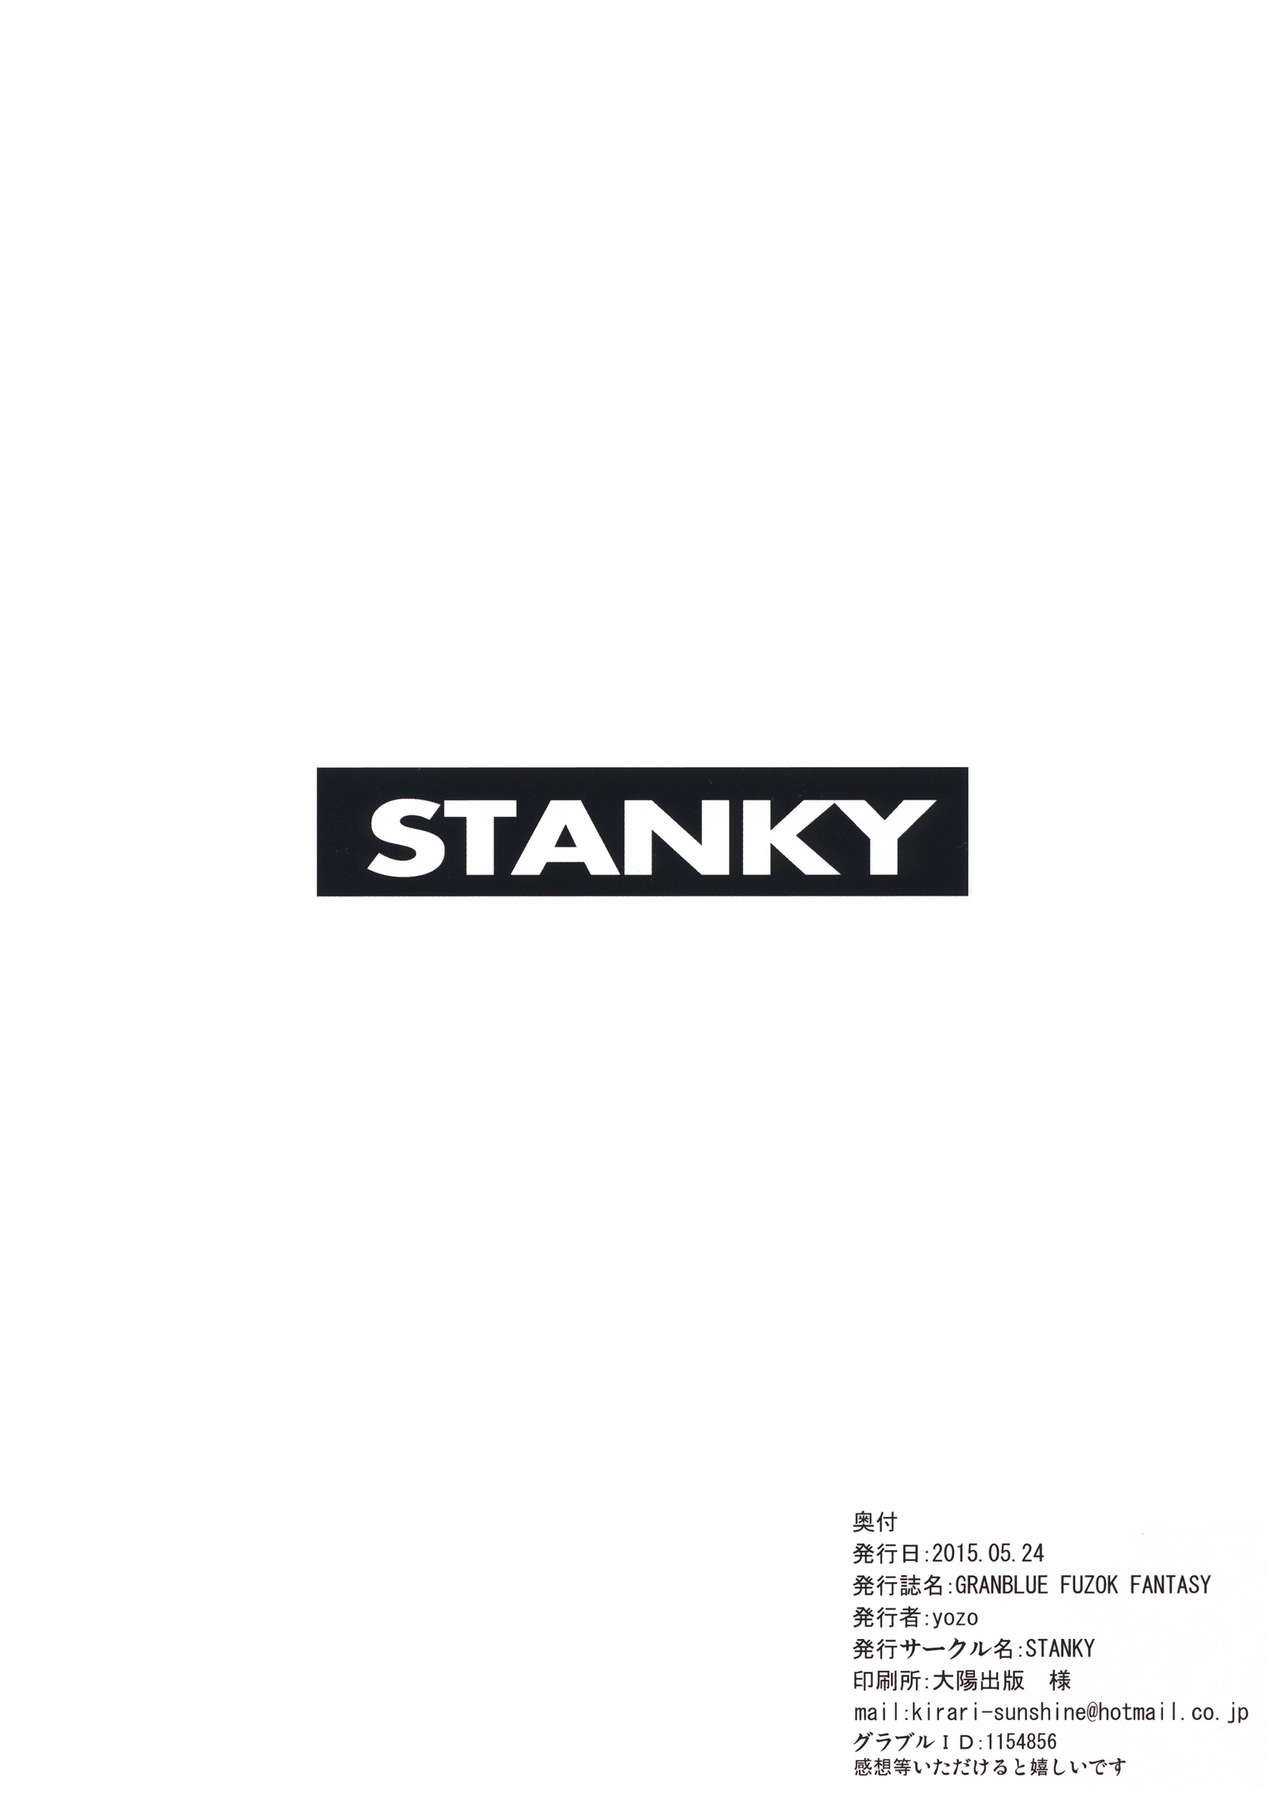 (さいけっと) [STANKY (yozo)] GRANBLUE FUZOKU FANTASY (グランブルーファンタジー)